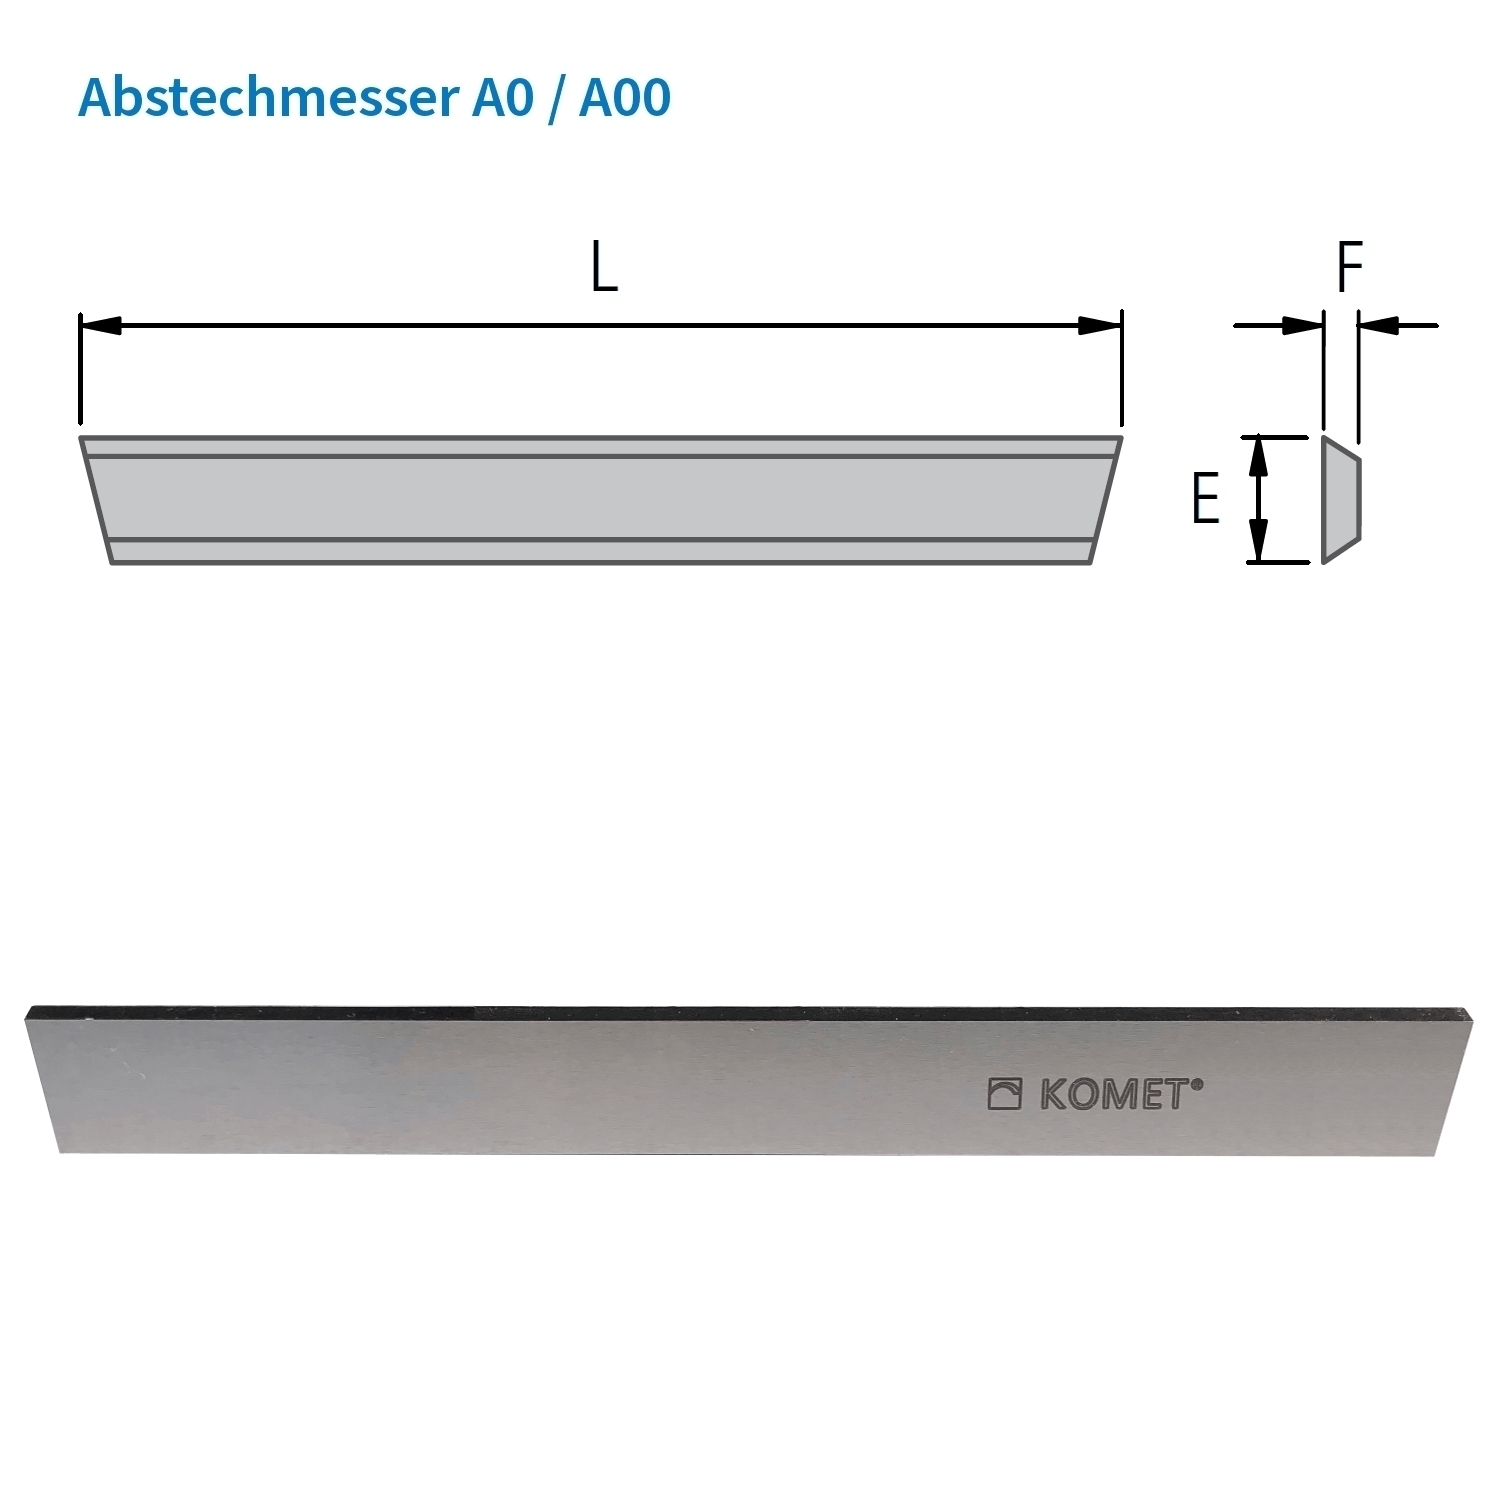 KOMET Abstechmesser A0 für Abstechhalter A / E